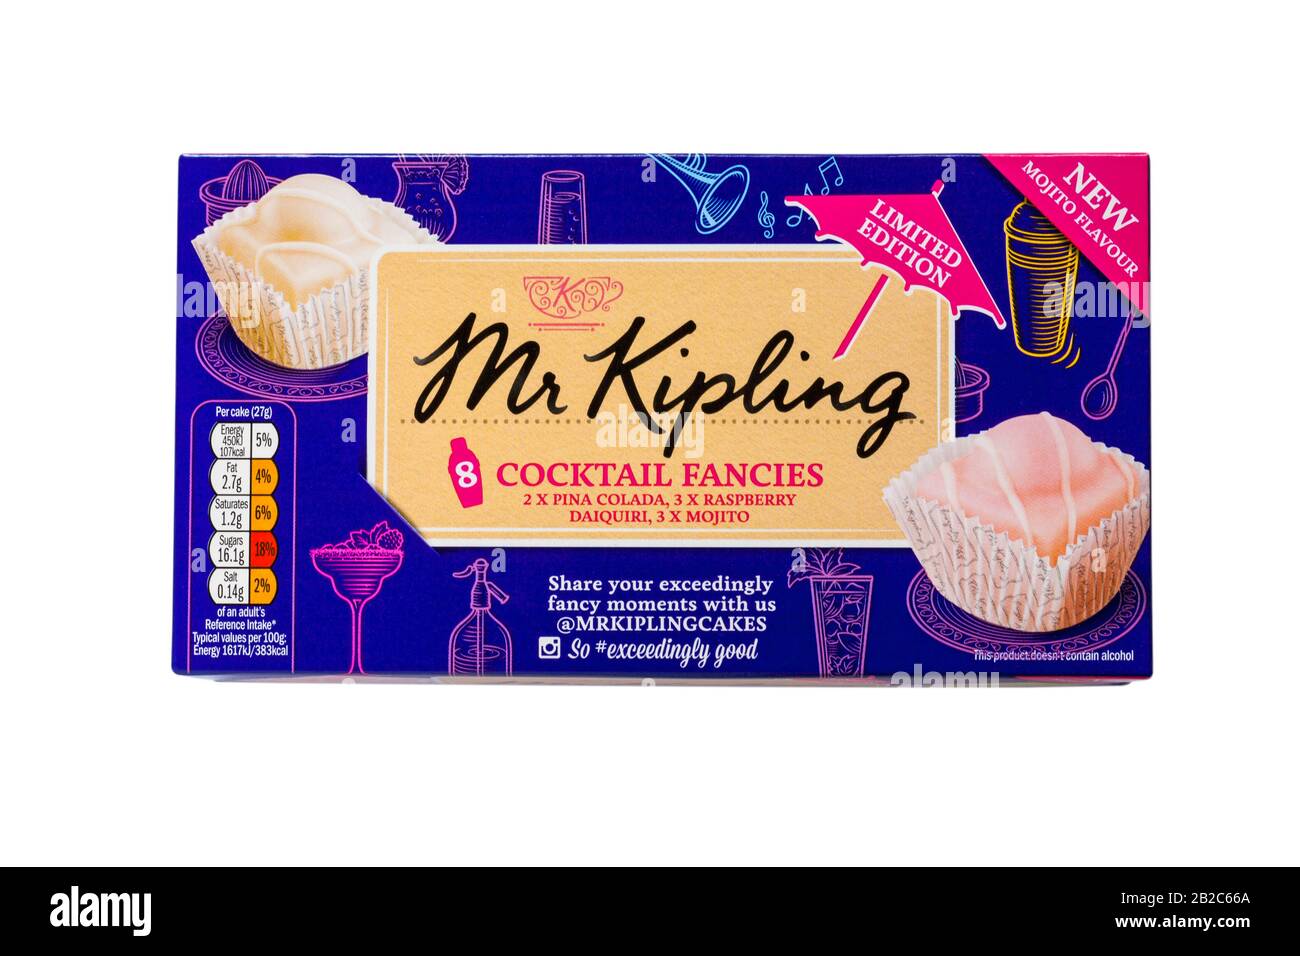 Fort de Mr Kipling fantaisies Cocktail isolé sur fond blanc - pina colada, mojito et daiquiri framboise saveurs Banque D'Images